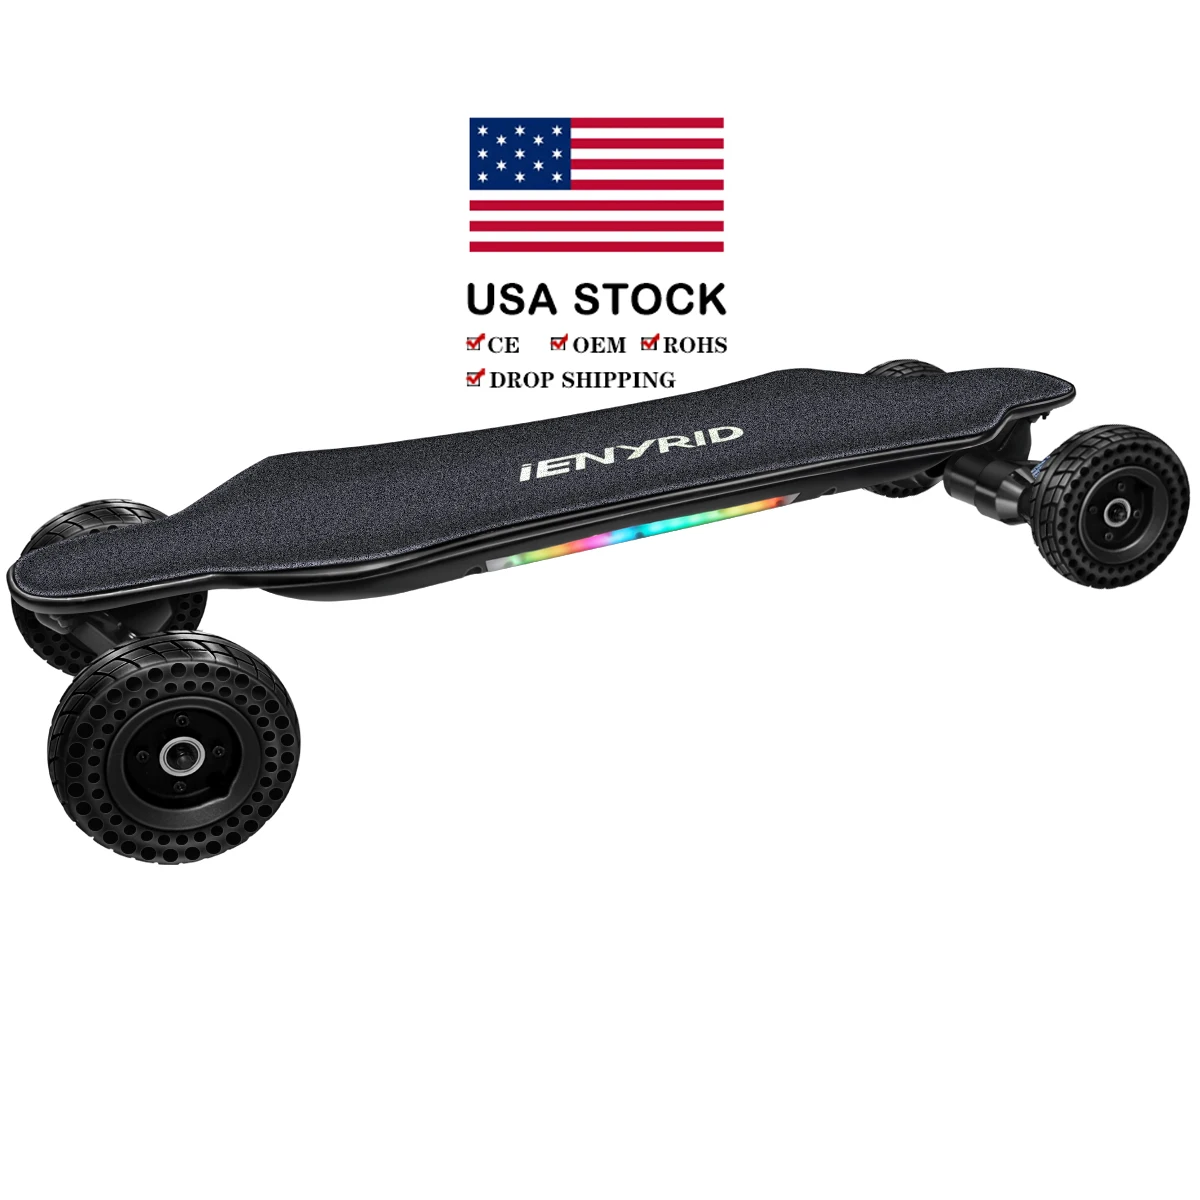 Diy electric longboard skateboard oem 4 wheel electric remote skateboard 1000w*2 Motor Power for sale